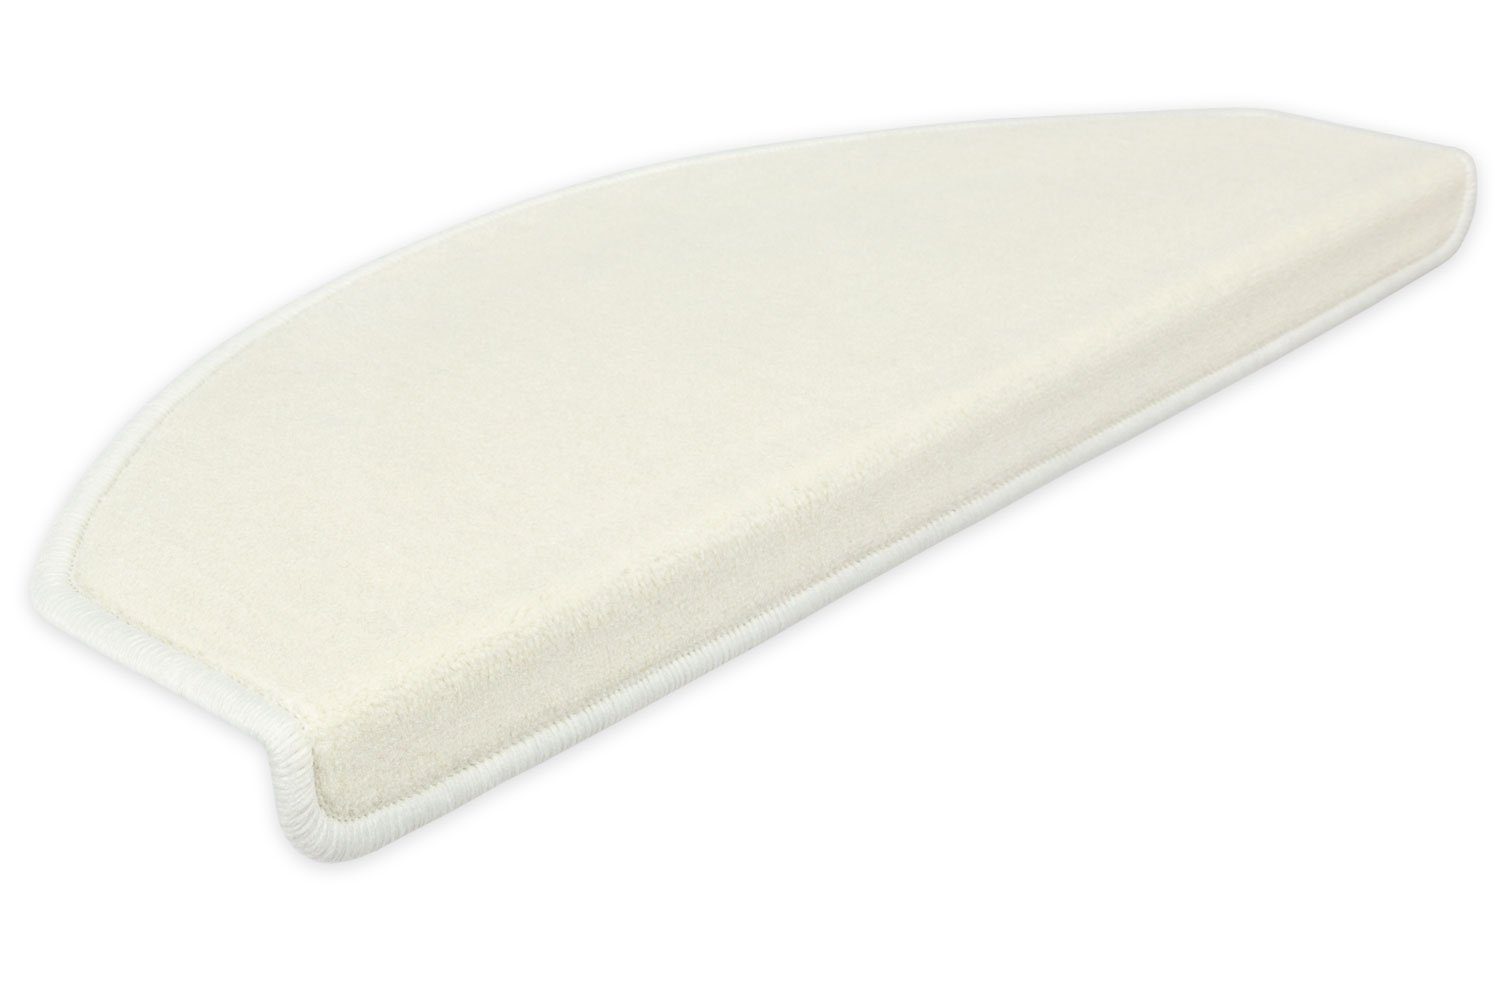 Stufenmatte Stufenmatten Vorwerk Uni Halbrund Sparset Baumwollweiß 15 Stück, Metzker®, halbrund, Höhe: 7 mm, 15 Stück im Set - Baumwollweiß